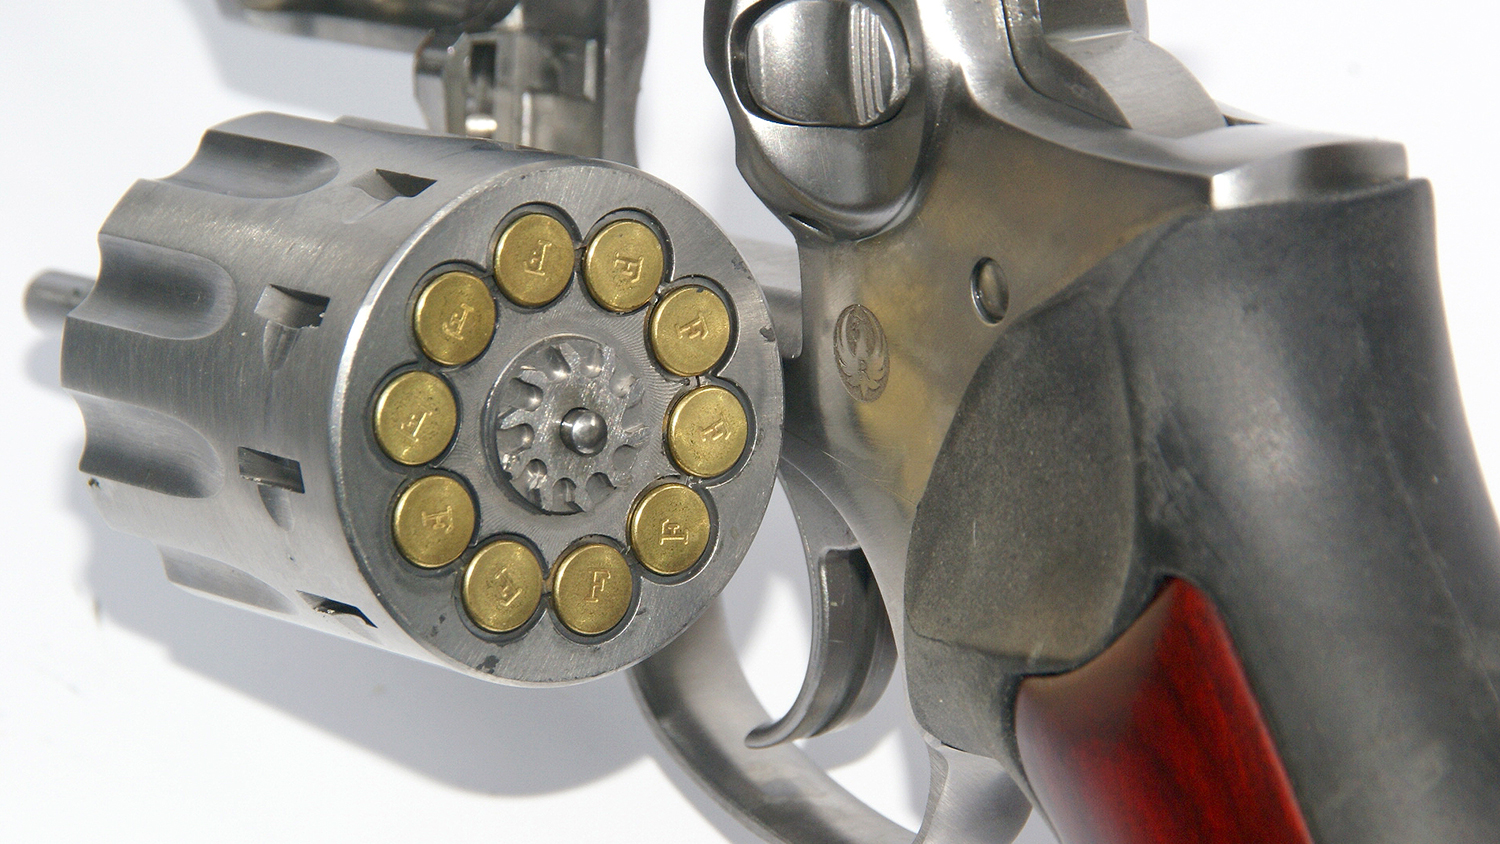 22 pistol revolver ruger